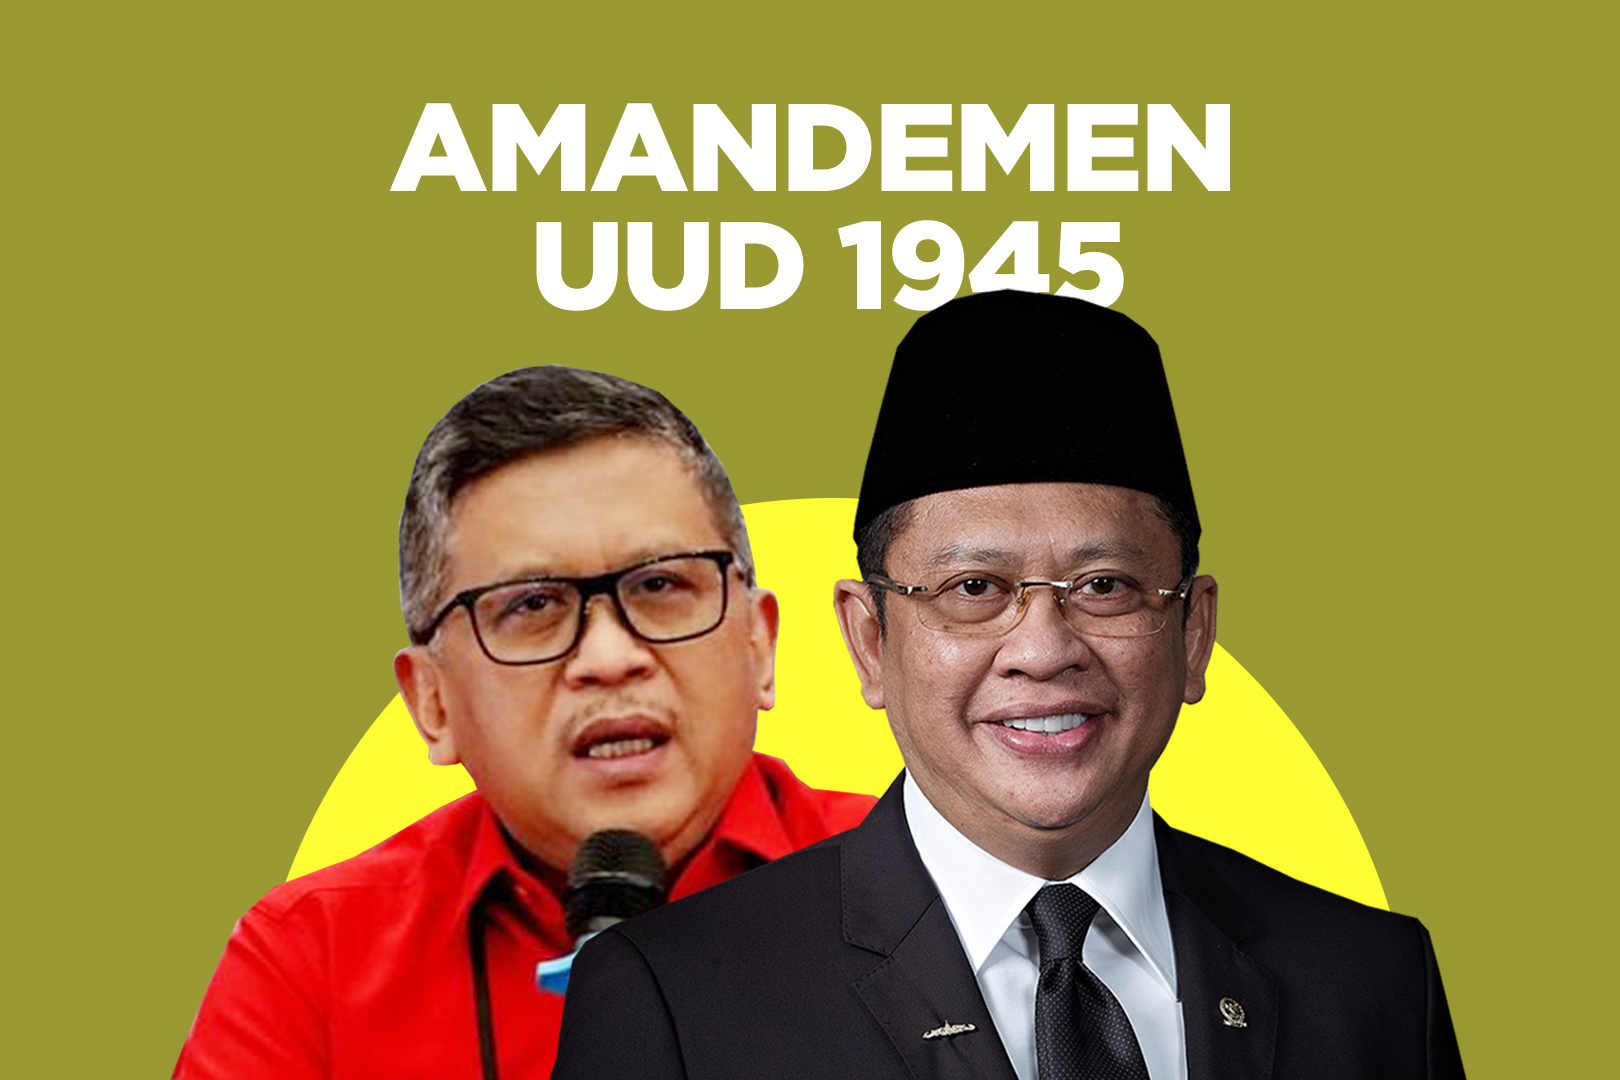 Bahas Amandemen UUD 1945, Hasto Kristiyanto: Harus Dilakukan Secara Cermat 